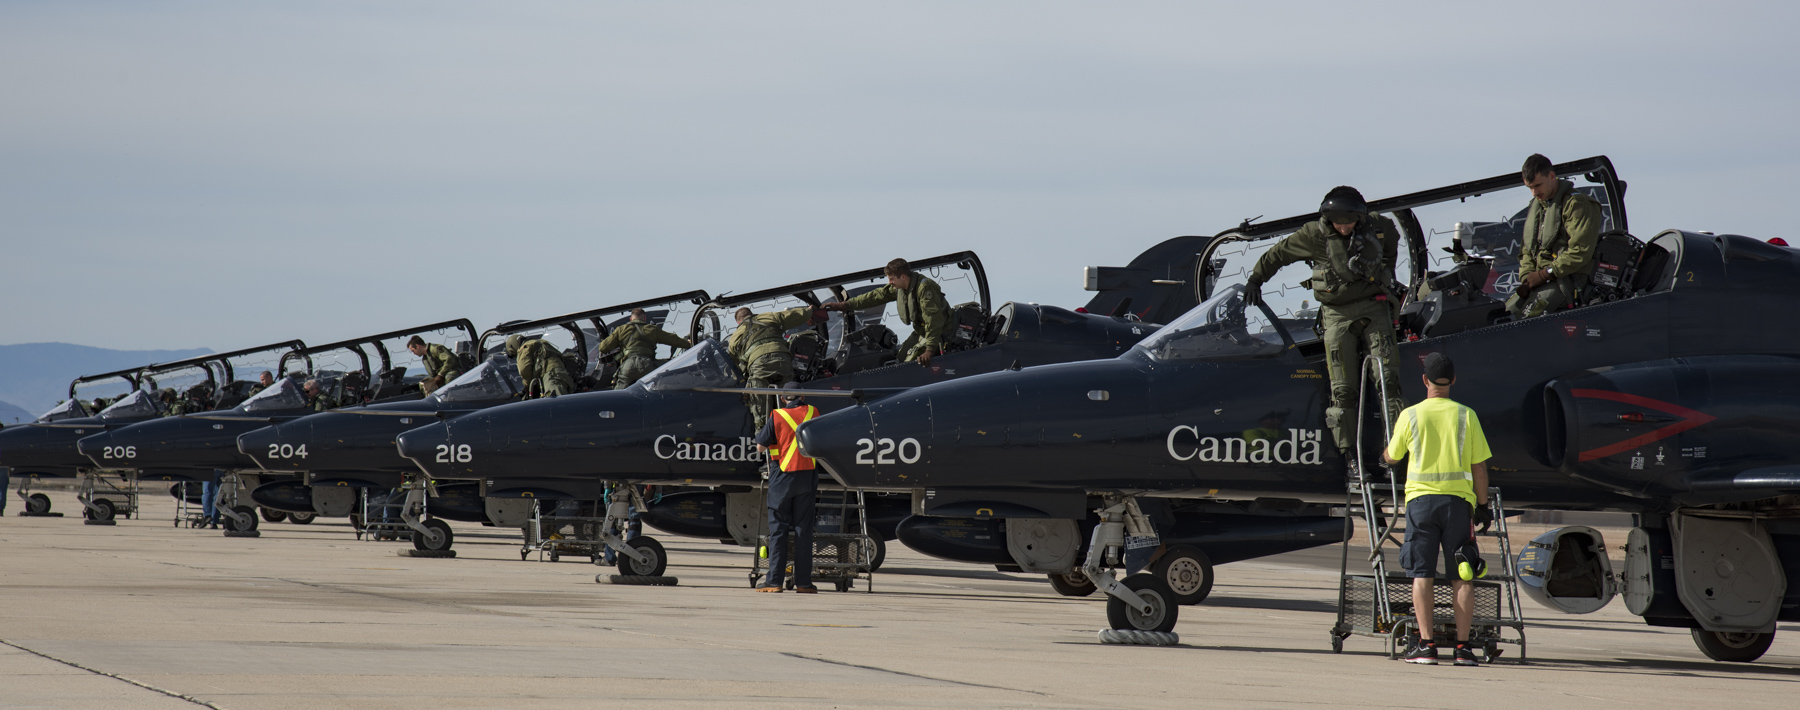 Le 28 novembre 2017, des avions CT-155 Hawk de l’Aviation royale canadienne arrivent à la Naval Air Facility d’El Centro, en Californie, en vue de participer à l’exercice Antler South. PHOTO : Matelot de 3e classe Erica Seymour, CK02-2017-1043-005